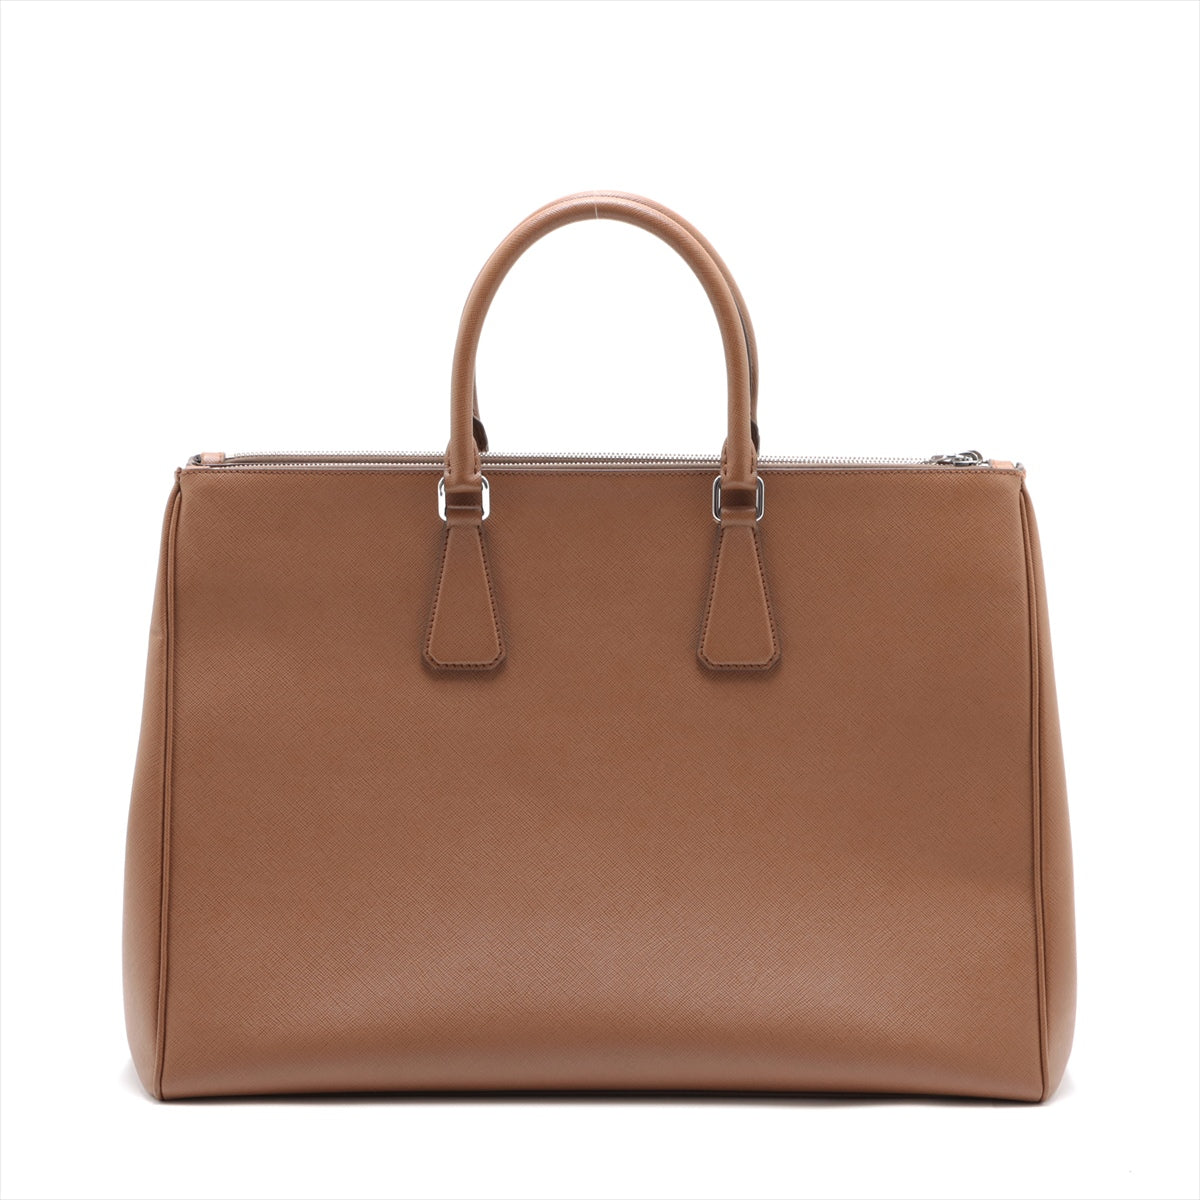 Prada Saffiano Travel Hand bag Brown 2VG047